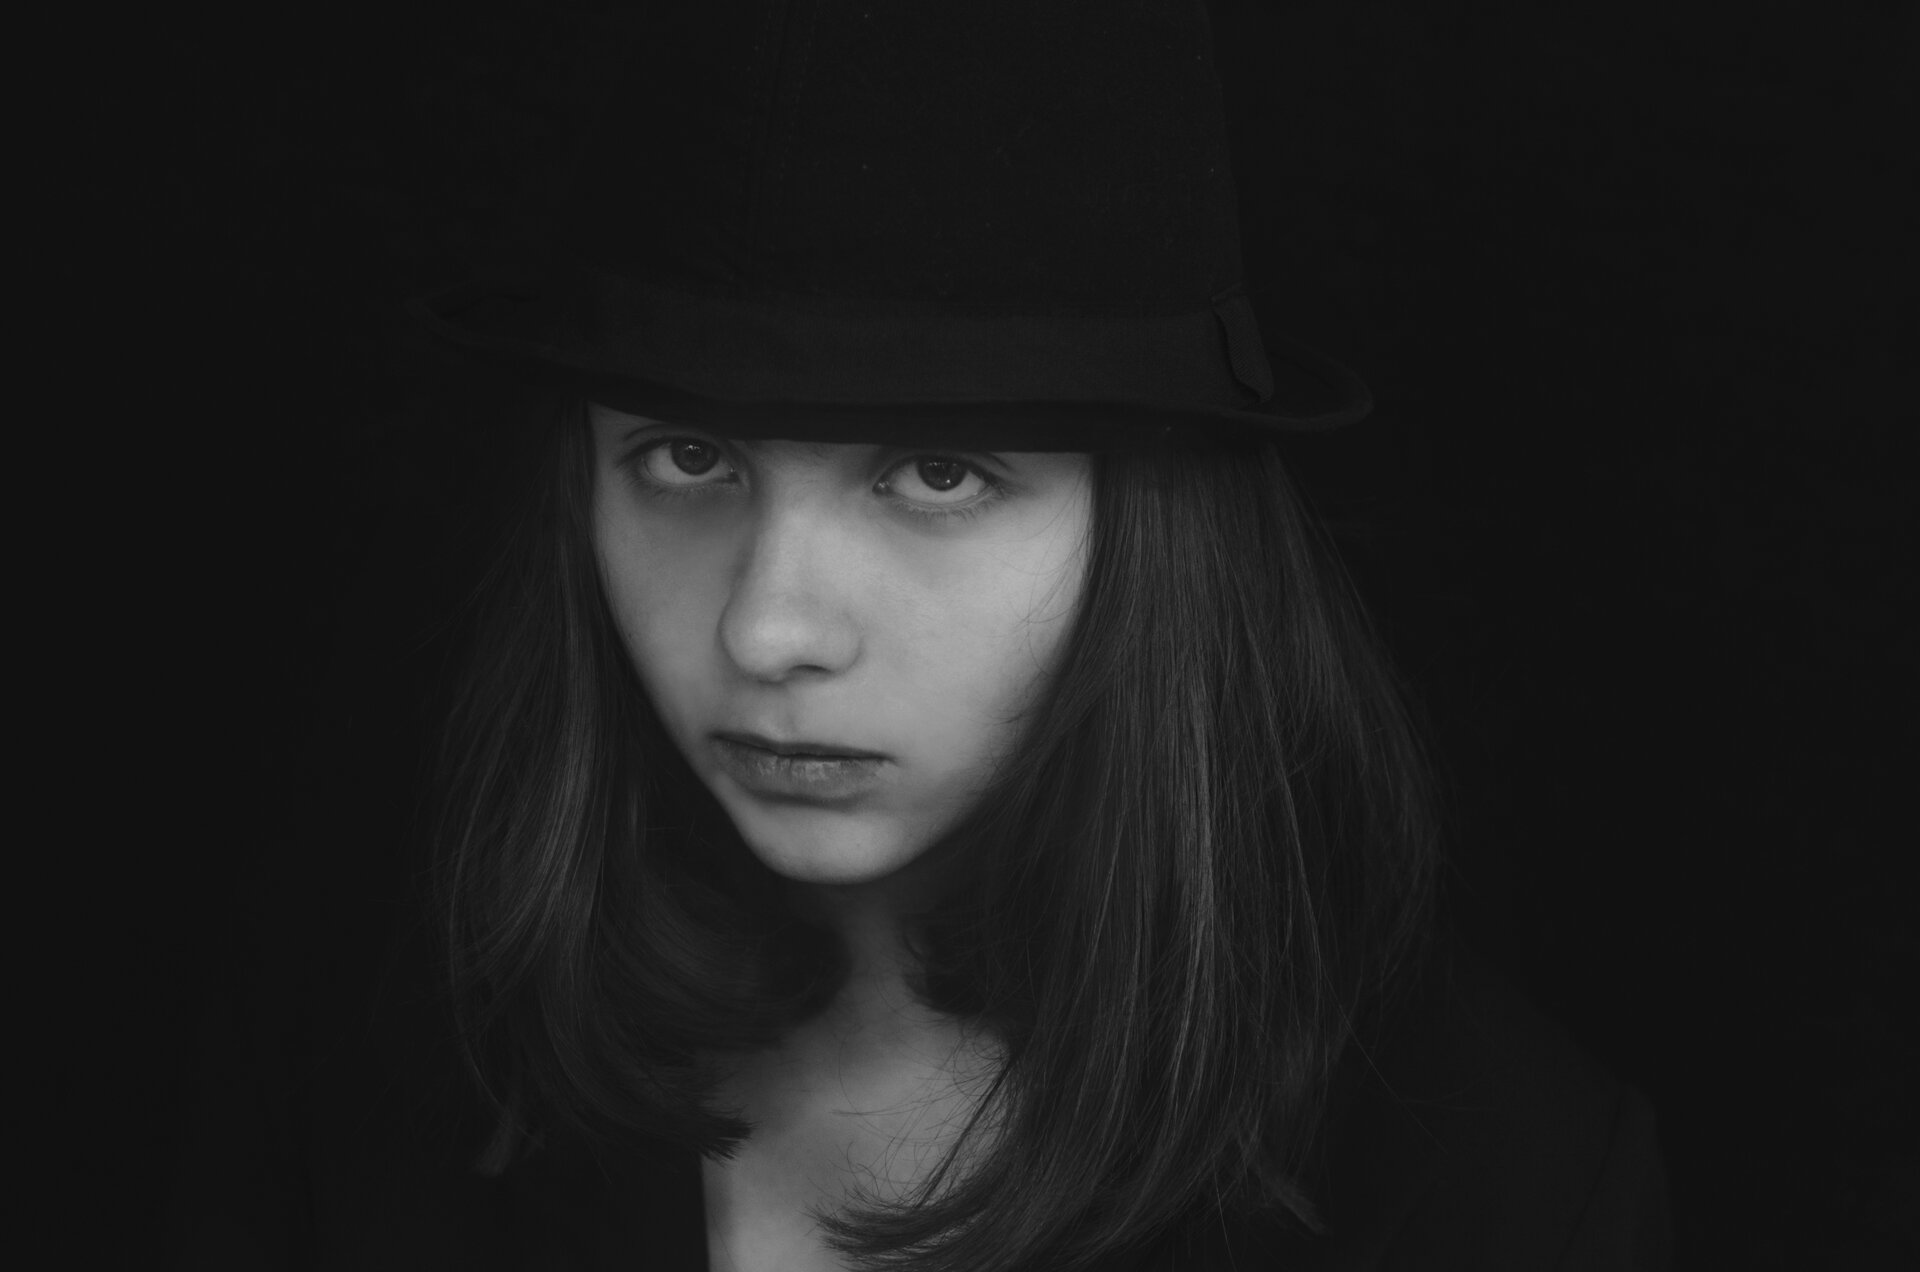 Photo in Portrait | Author Desislava Ignatova - desiignat | PHOTO FORUM